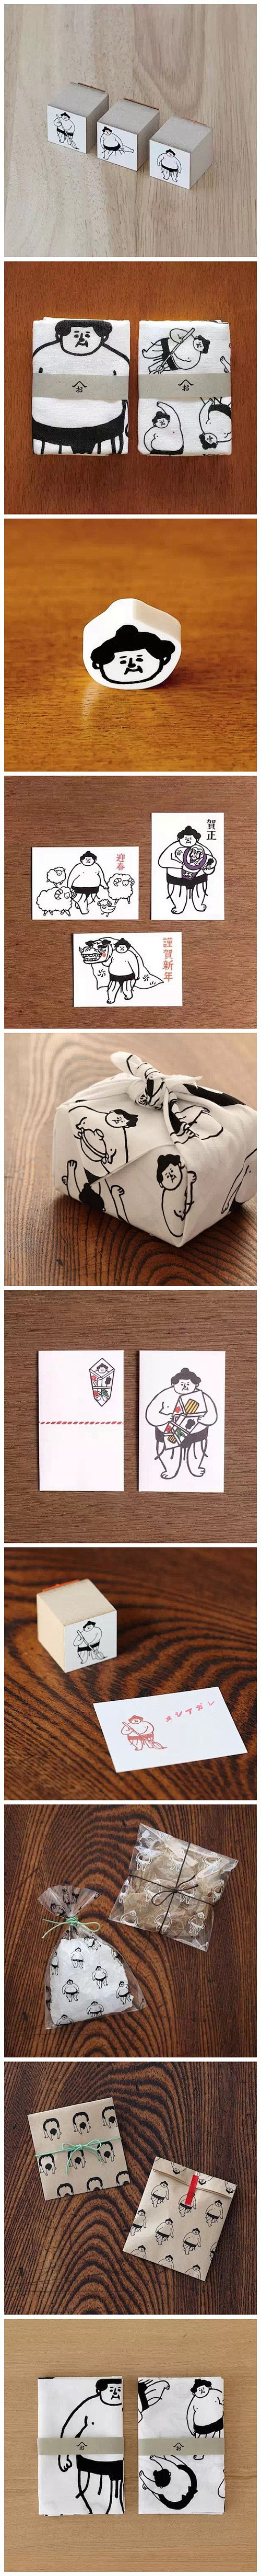 日本杂货品牌「西東」推出了以相扑手为卡通...